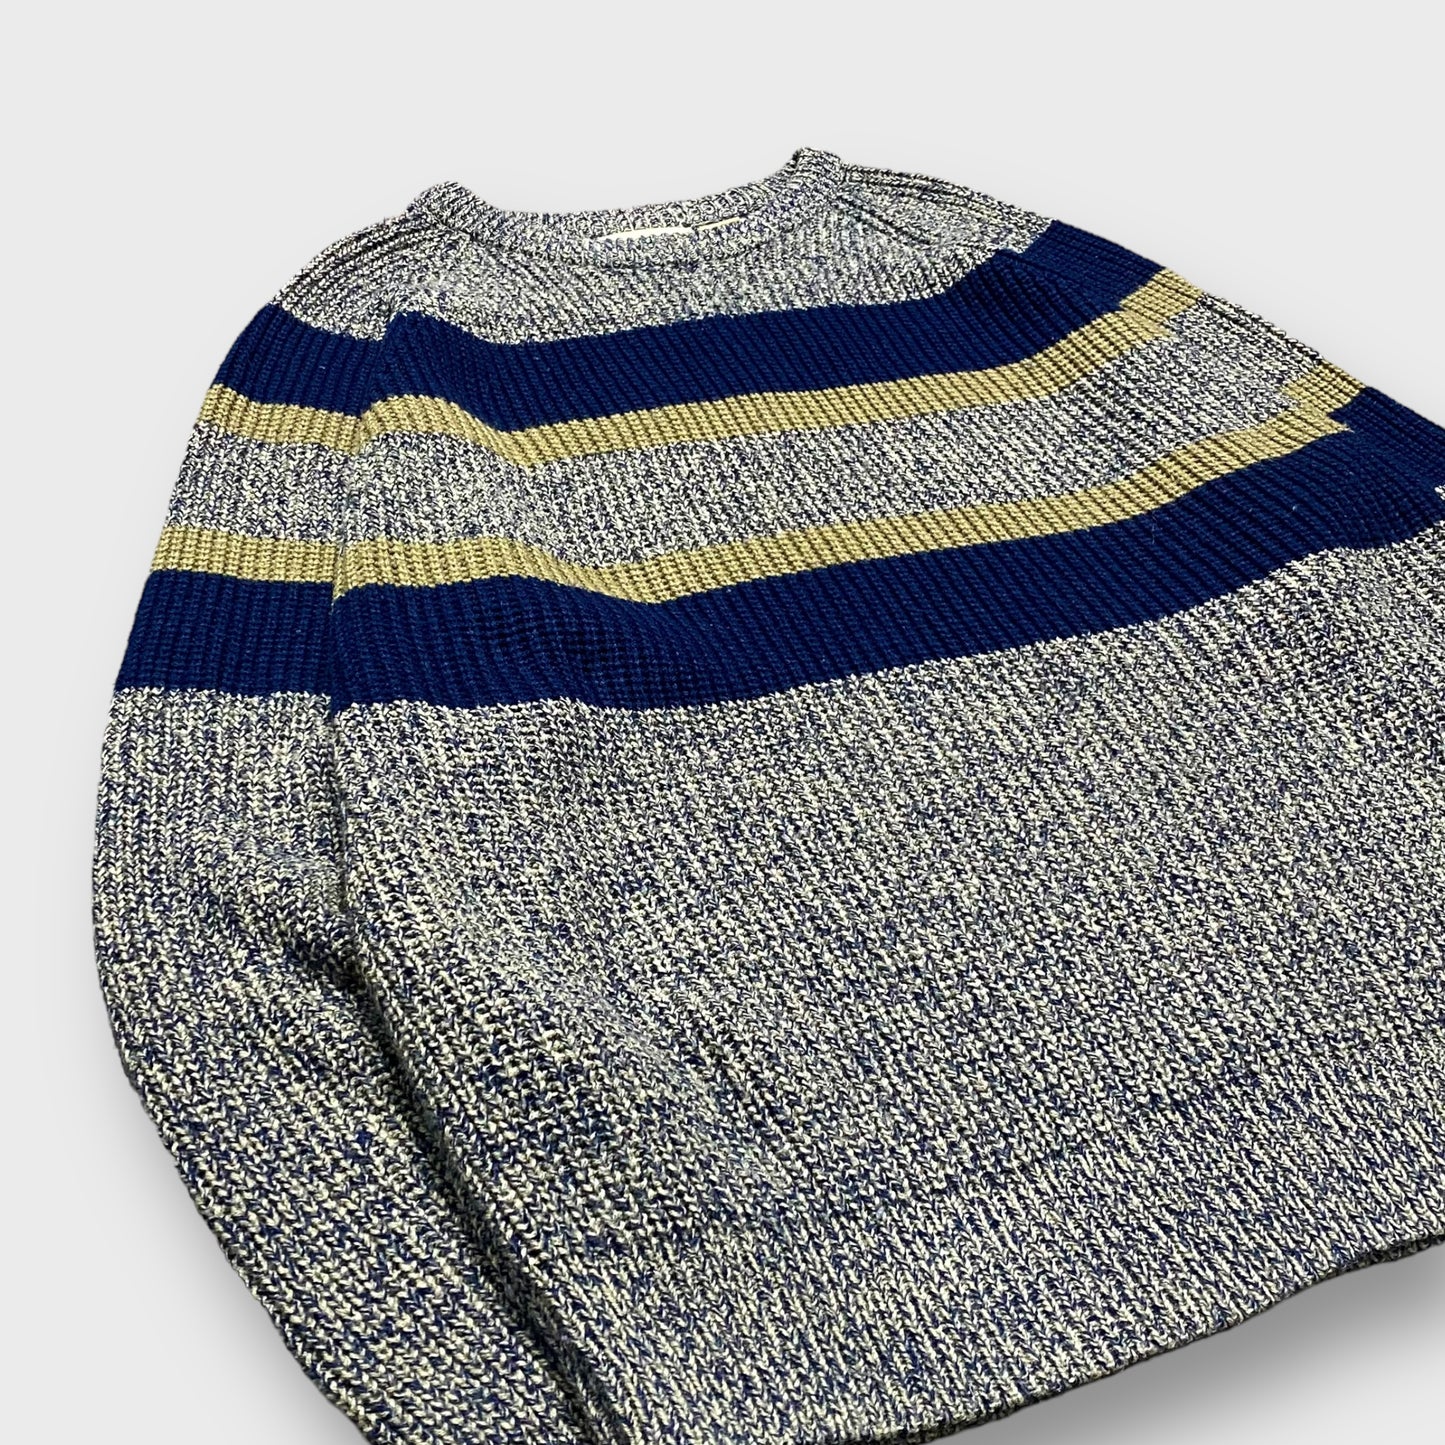 90's "ST JOHN'S BAY" Wide border pattern knit sweater